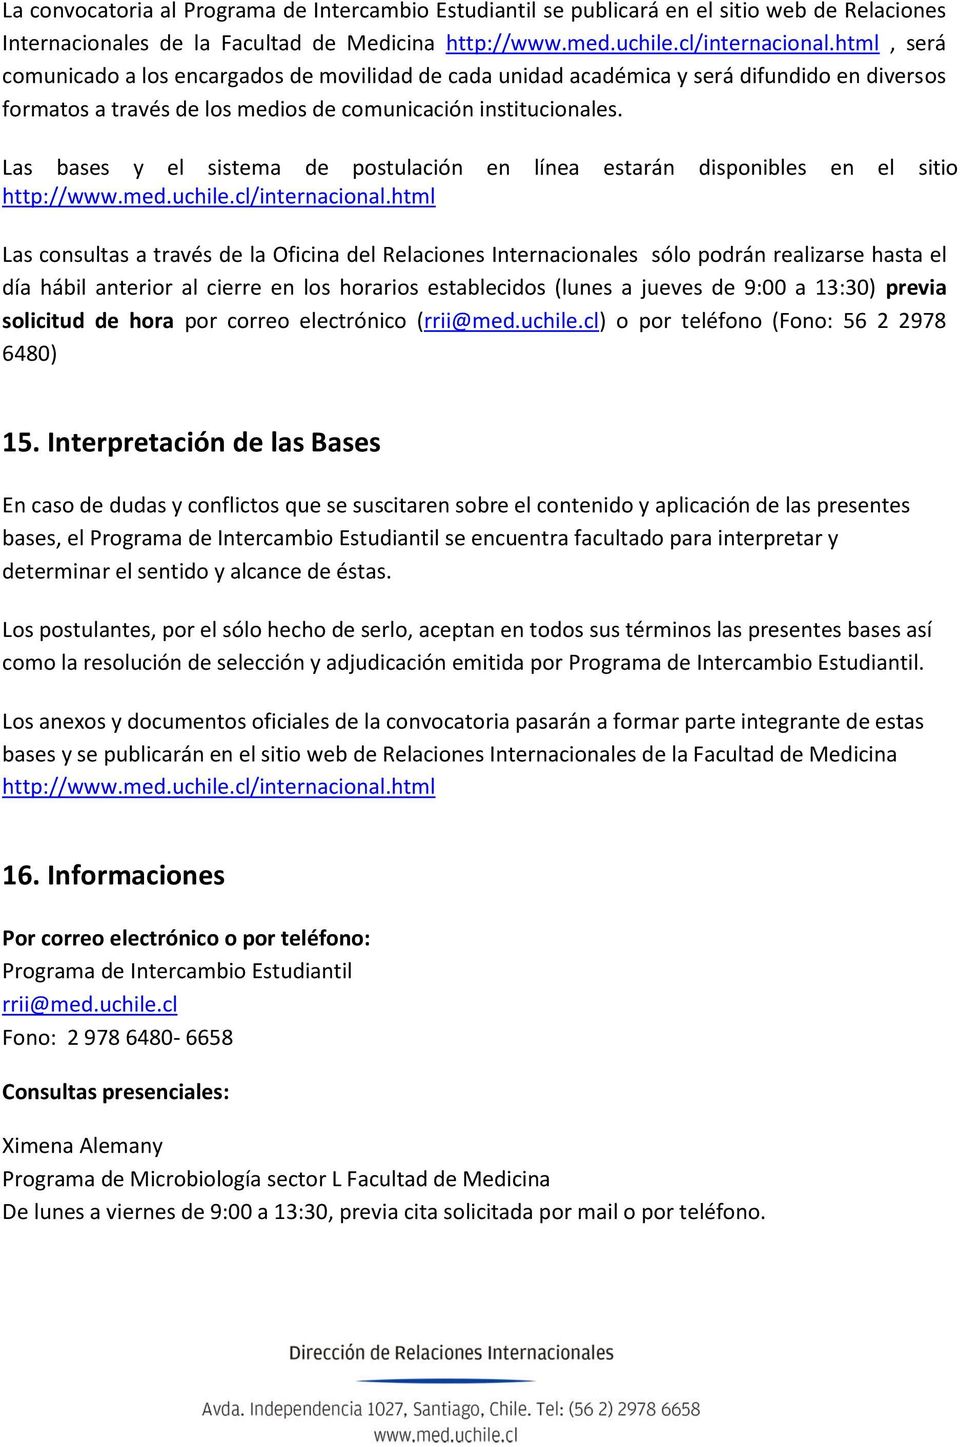 Las bases y el sistema de postulación en línea estarán disponibles en el sitio http://www.med.uchile.cl/internacional.